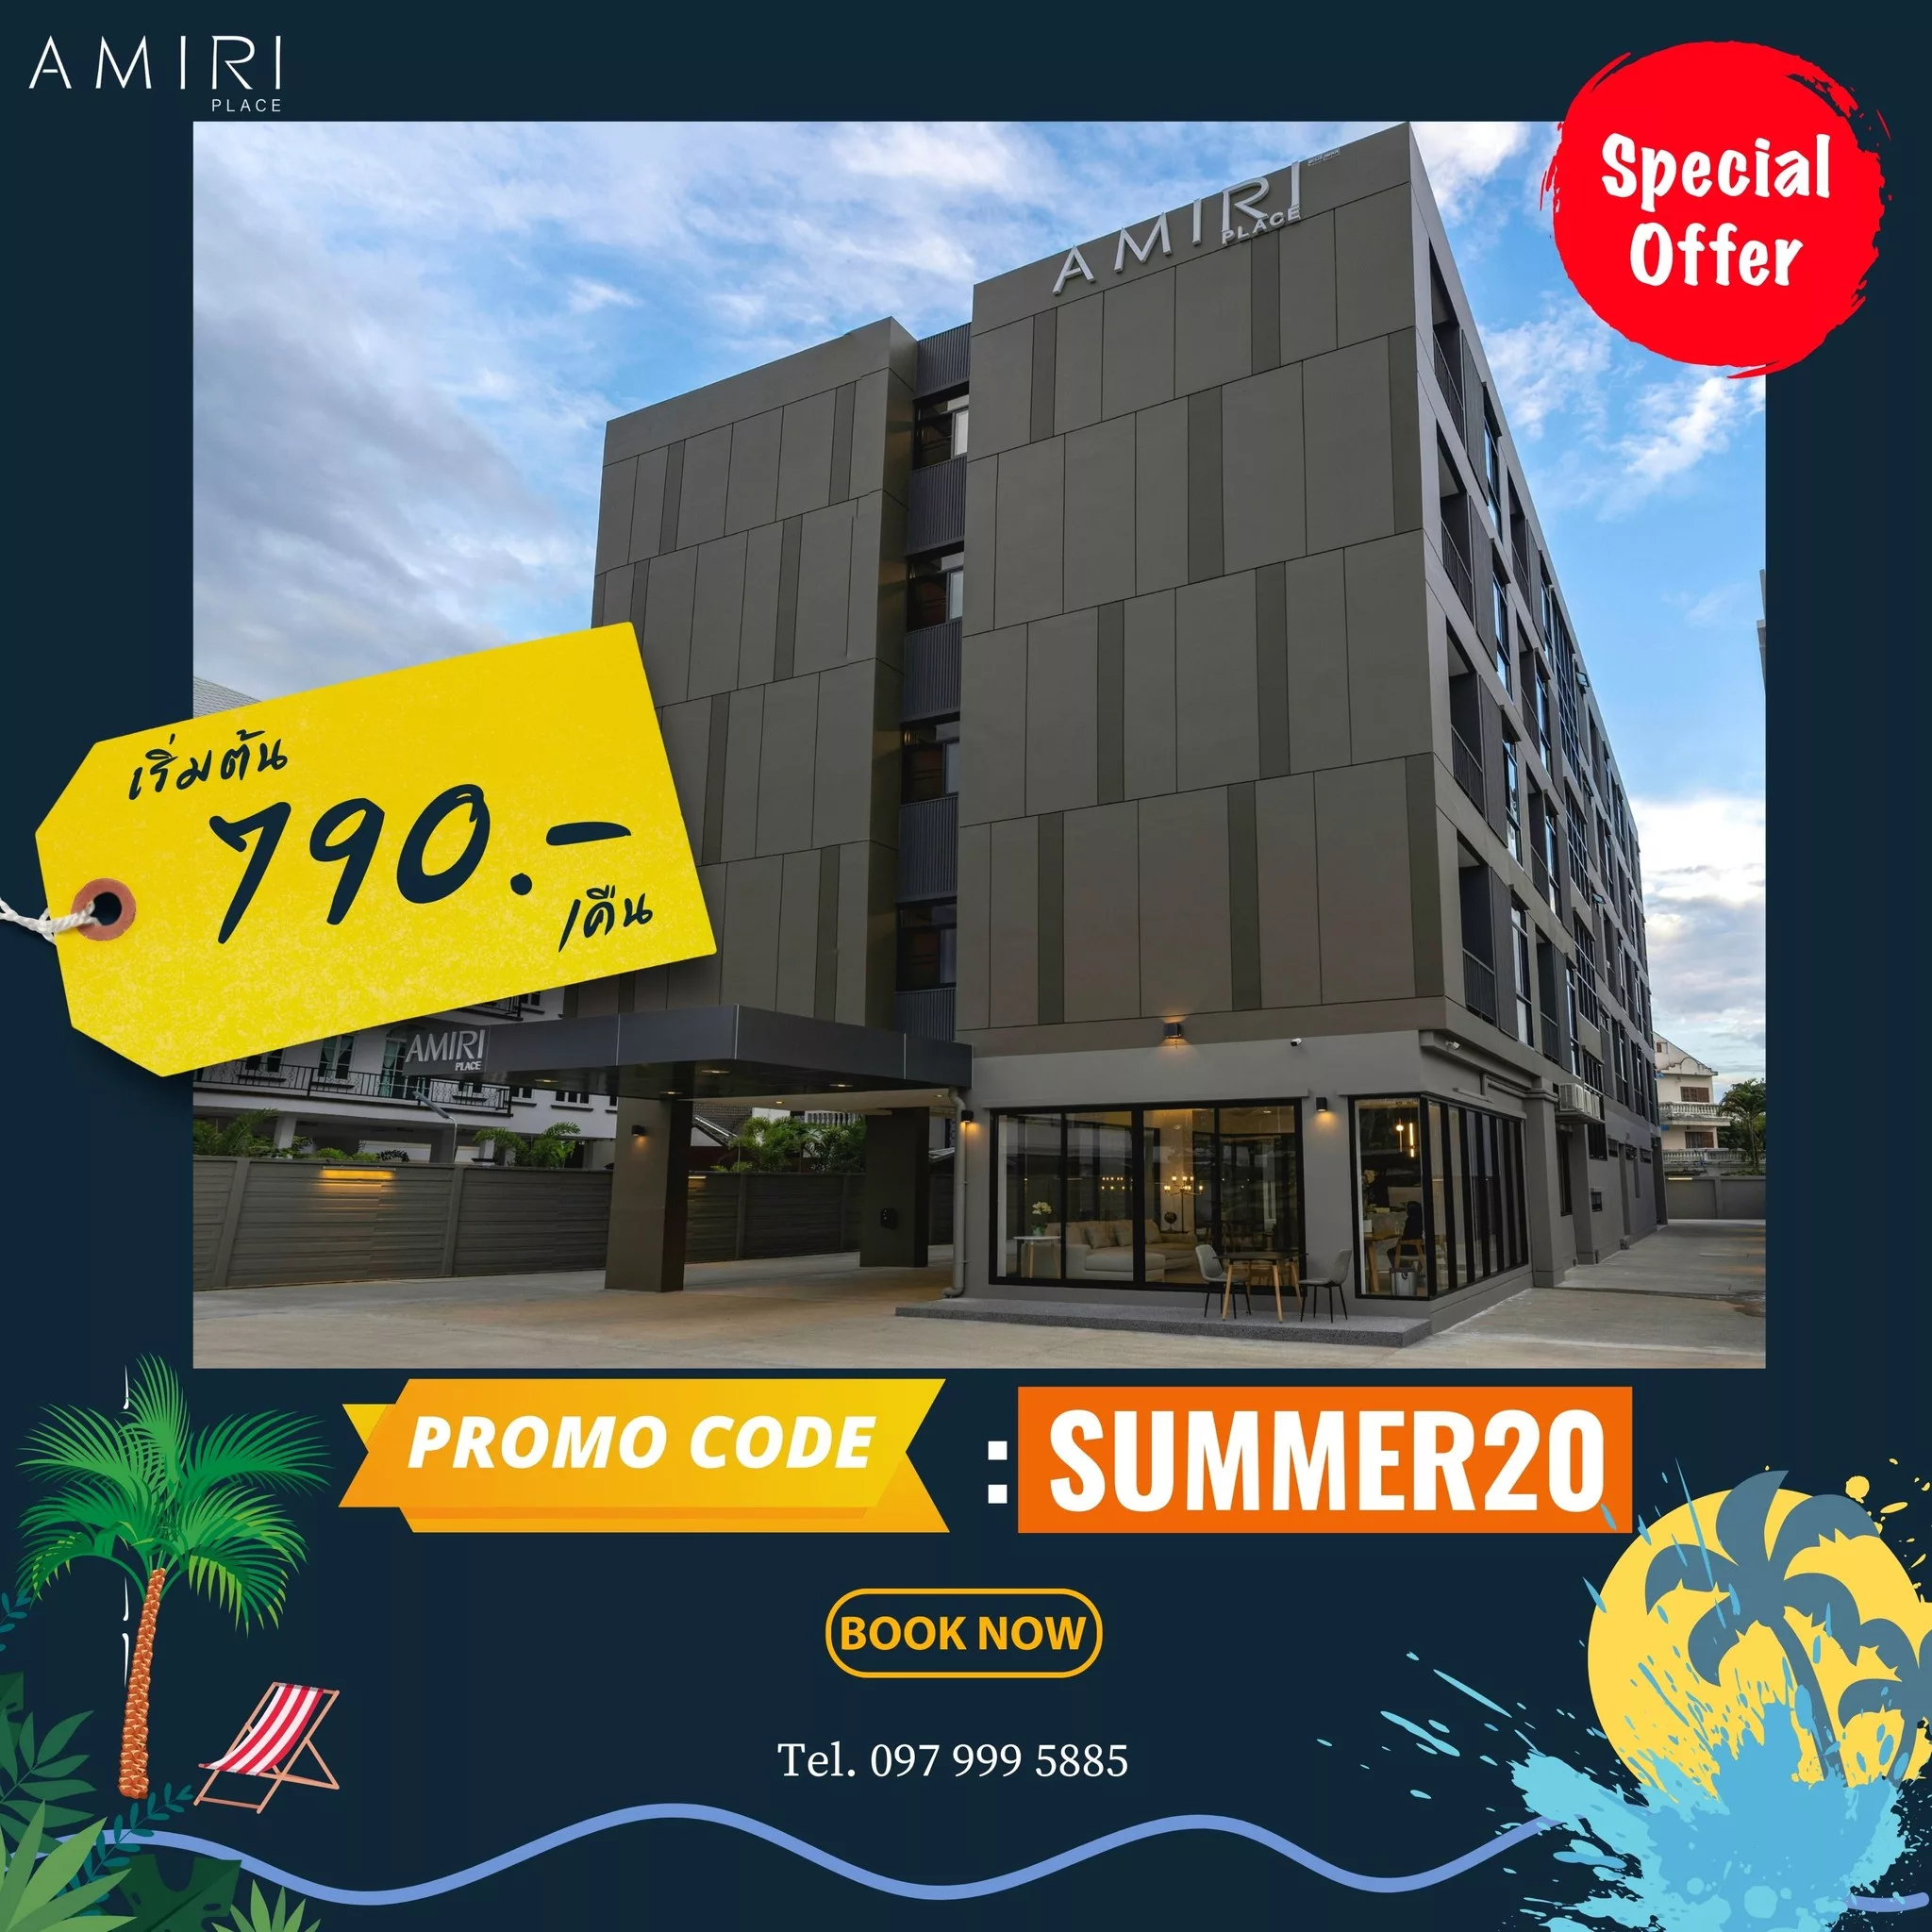 AMIRI PLACE เชียงใหม่ มอบส่วนลด 20% ราคาห้องพักเริ่มต้น 790.- บาท